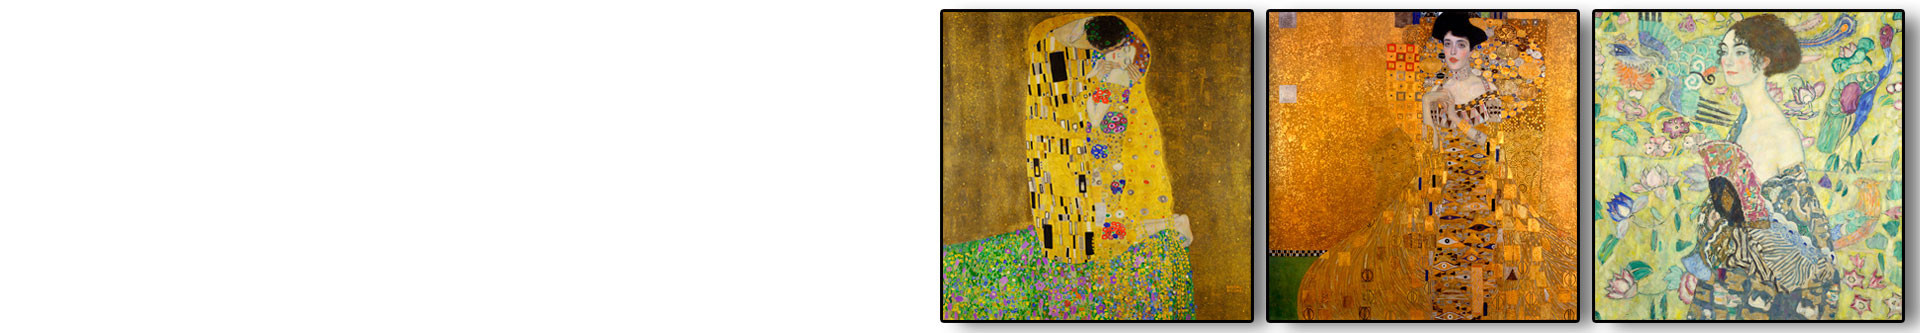 Reprodukcje Gustav Klimt, plakaty Klimt, Klimt plakaty, Gustav Klimt plakaty, Klimt plakat, plakaty Gustav Klimt, Gustav Klimt Pocałunek, Klimt Pocałunek, Klimt Pocałunek reprodukcja, plakat Klimt, plakat Gustav Klimt - sklep Grafiki Obrazy